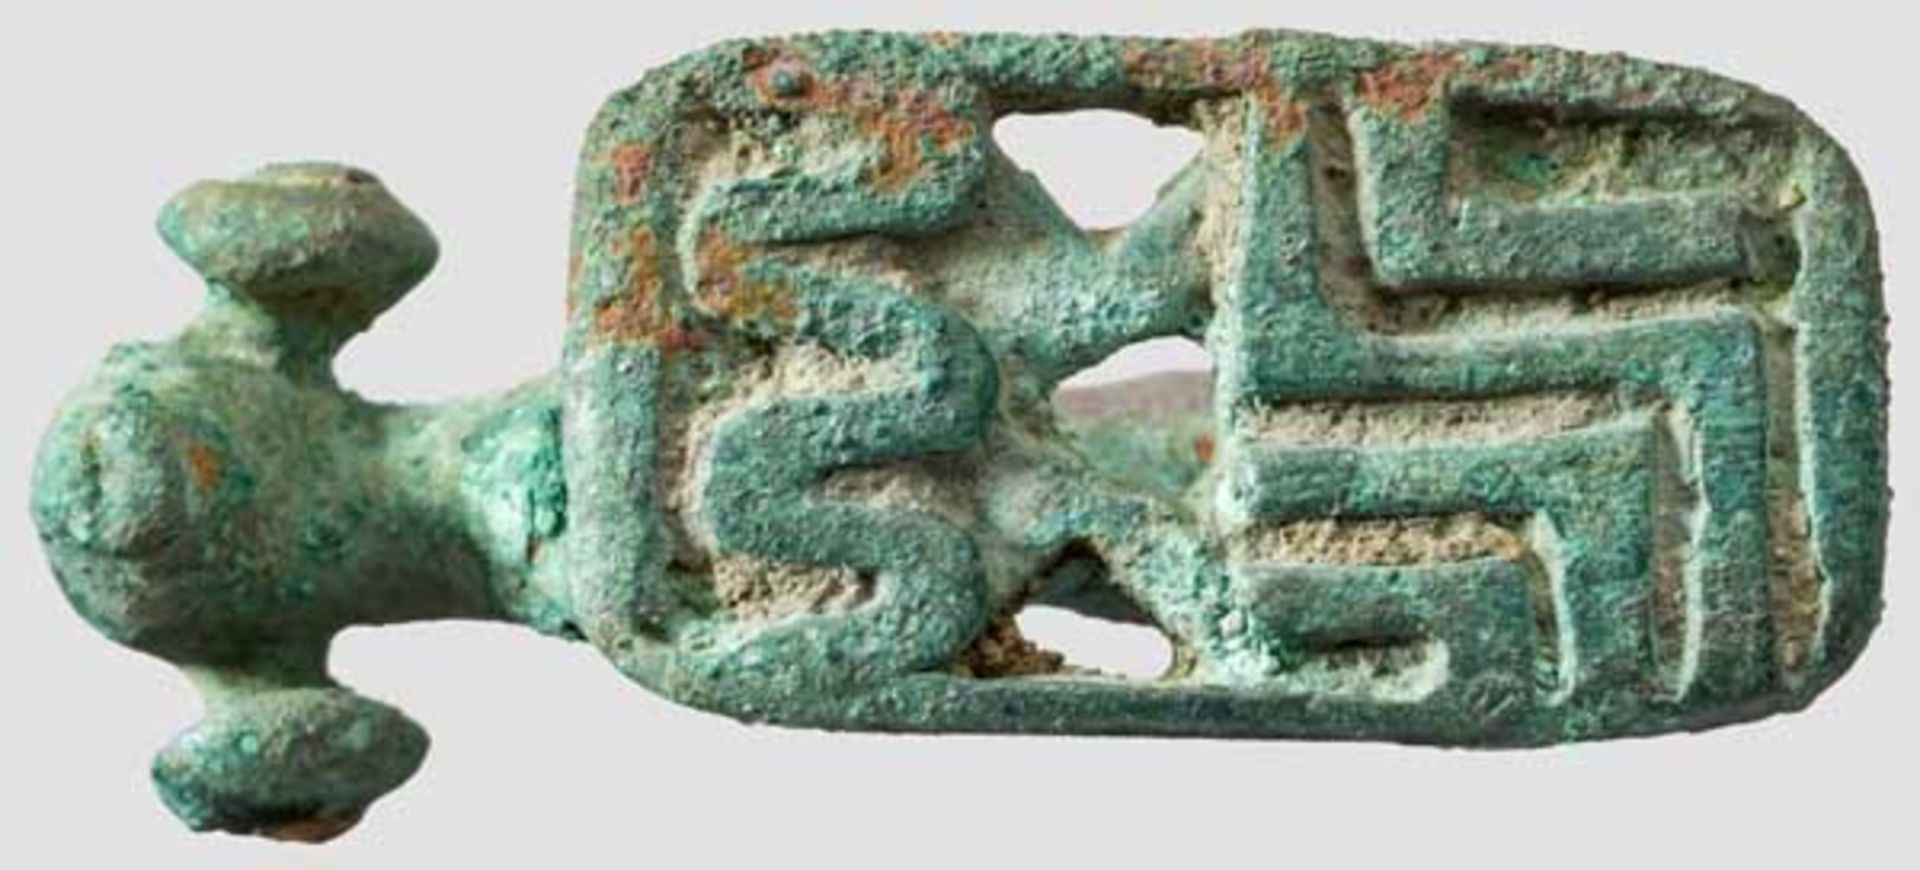 Bronzefigur eines Widders mit Stempel auf Basisunterseite, geometrischer Stil, 8. Jhdt. v. Chr. - Bild 3 aus 3